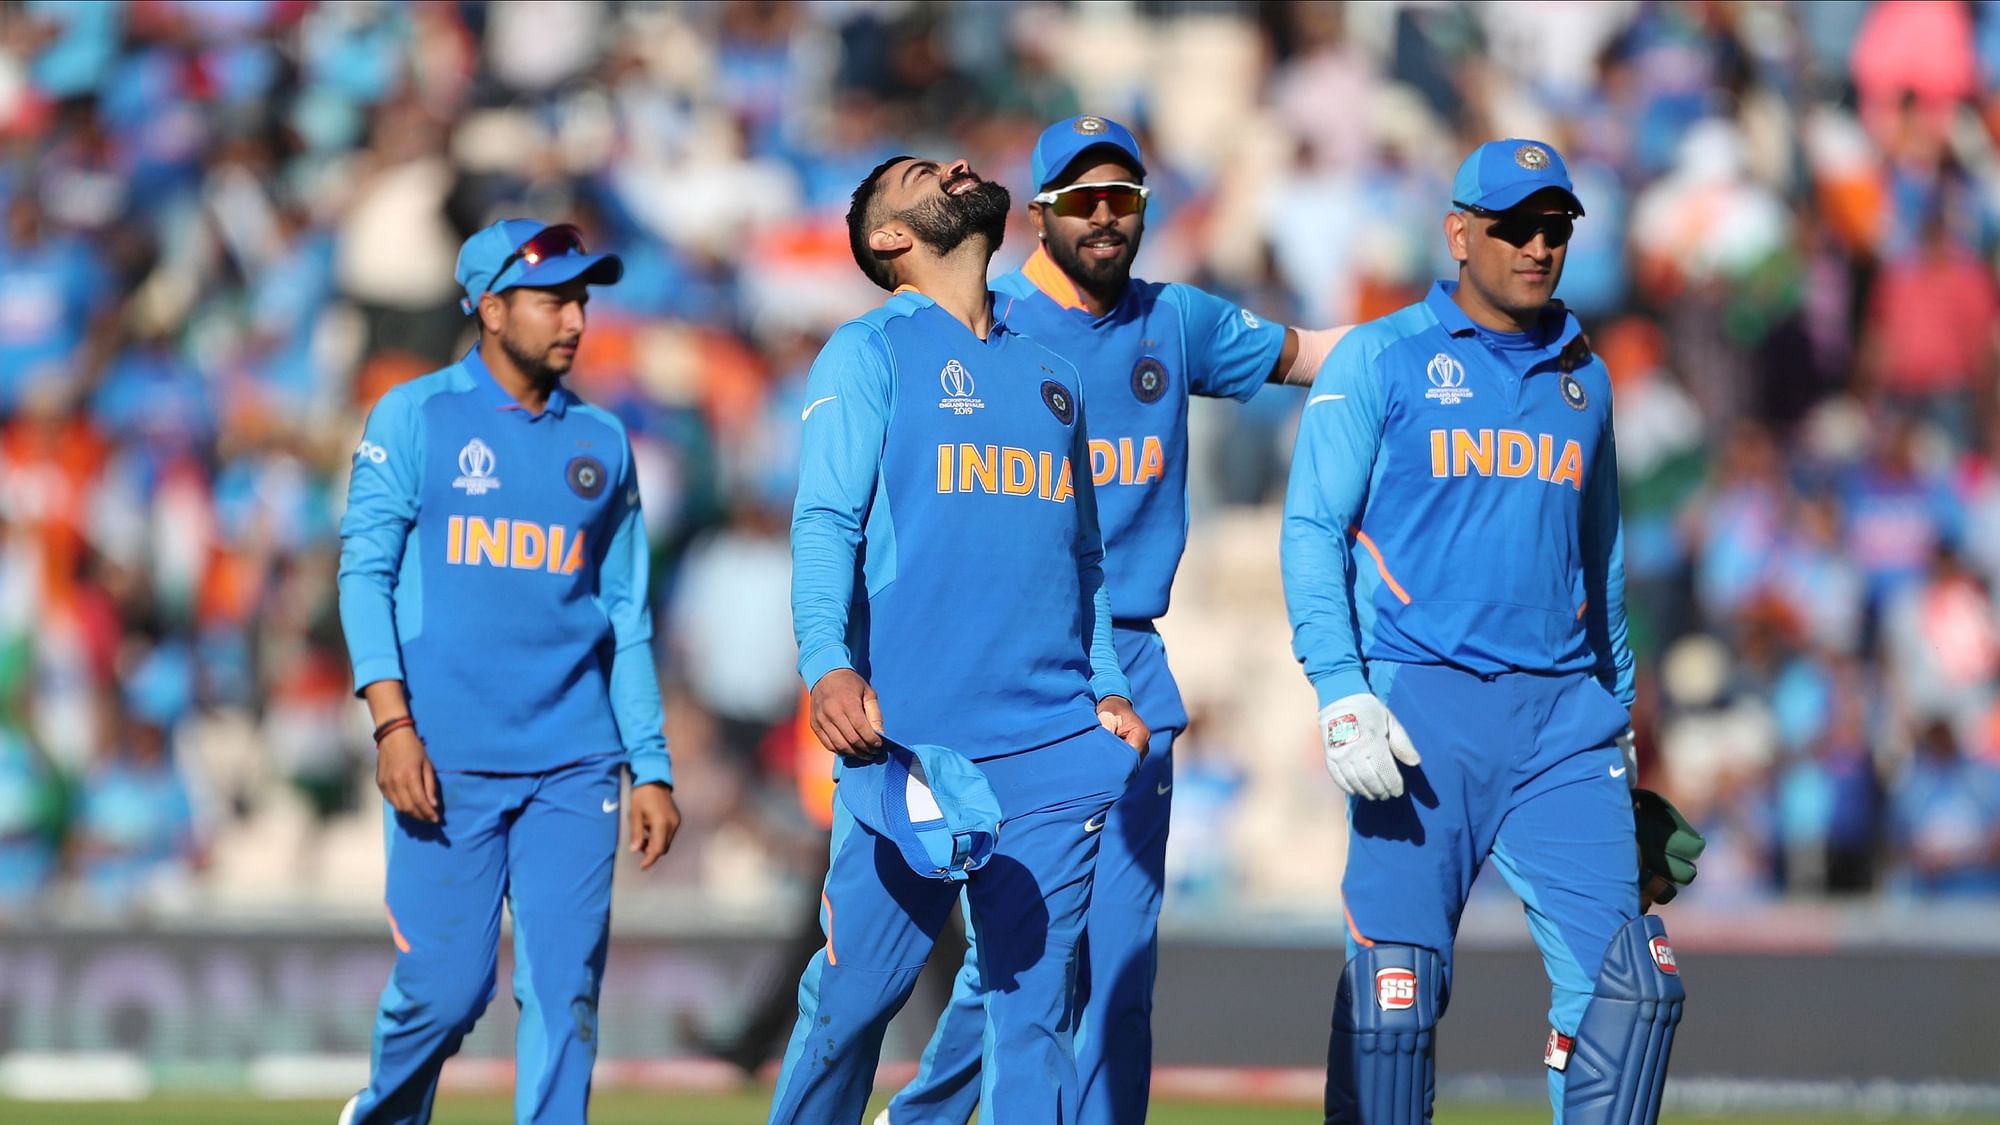 वर्ल्ड कप में हार के बाद टीम इंडिया में गुटबाजी की खबर आ रही है